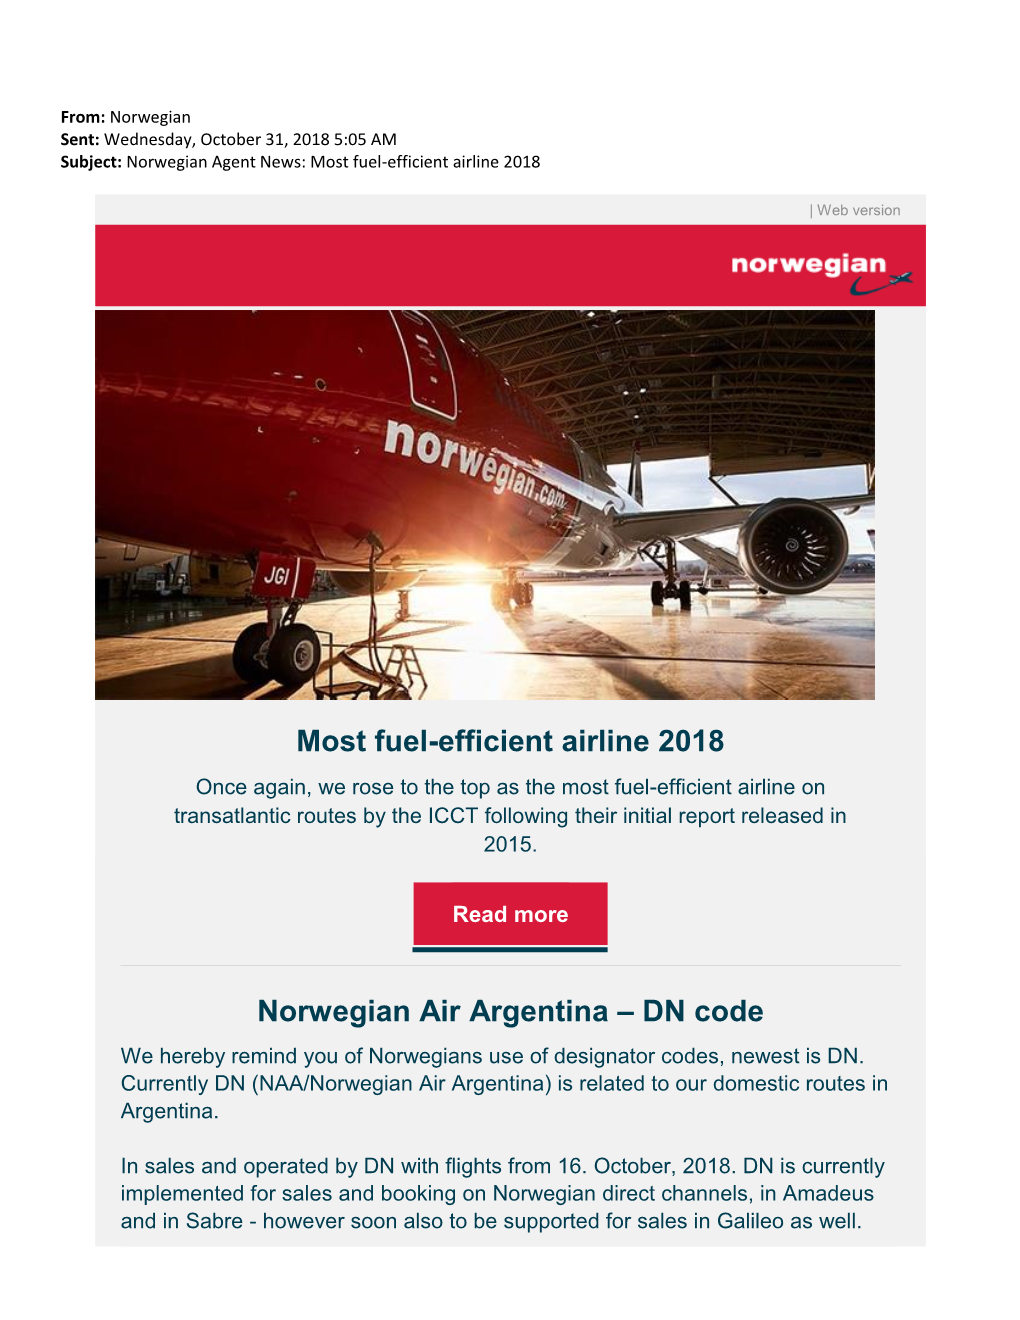 Most Fuel-Efficient Airline 2018 Norwegian Air Argentina